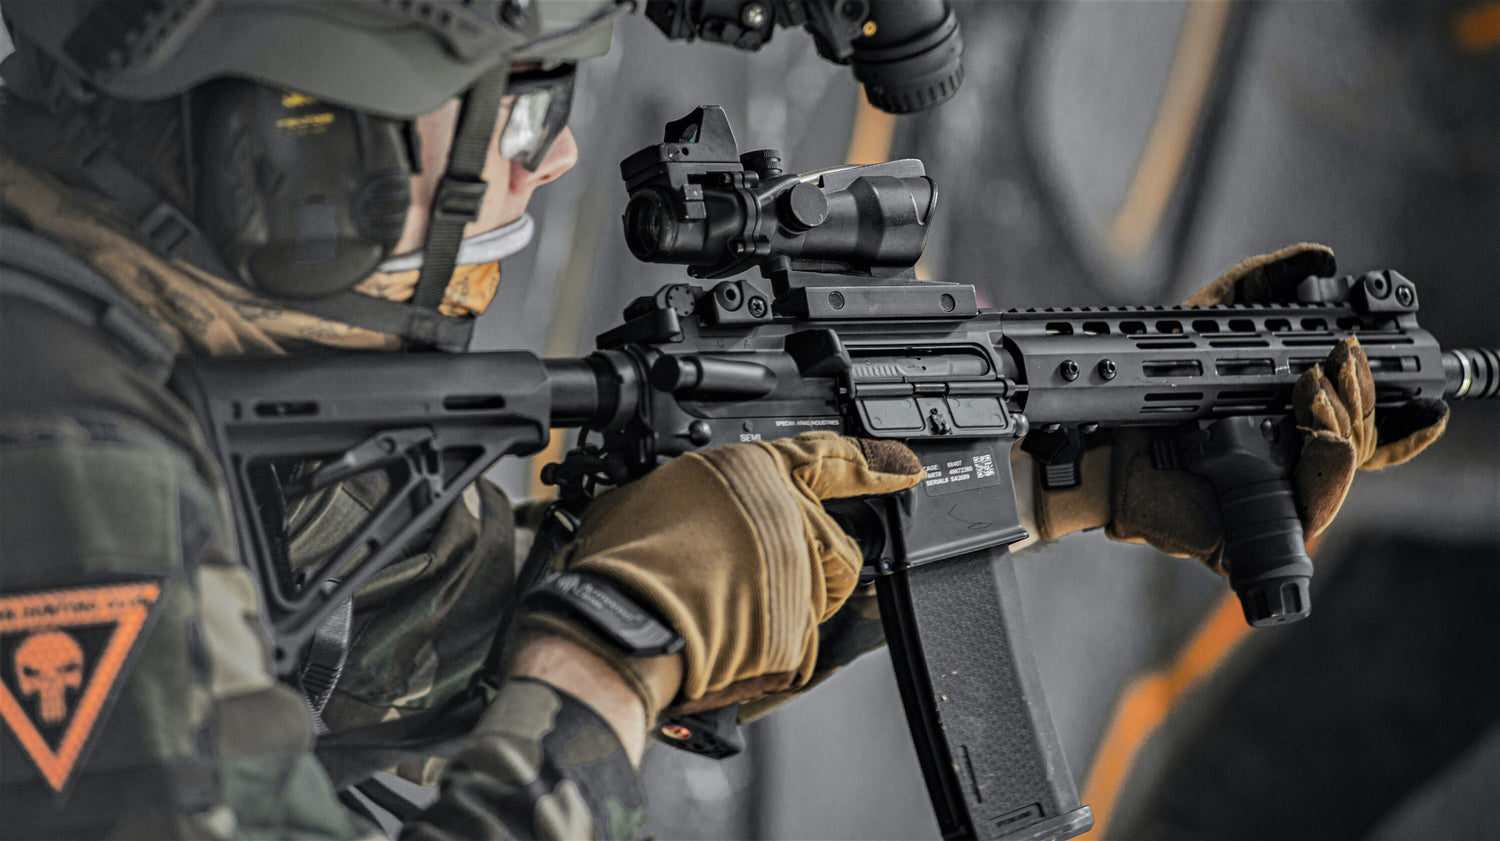 bbtac m16-a1 vietnam model spring action assault rifle(Airsoft Gun) – BBTac  Airsoft